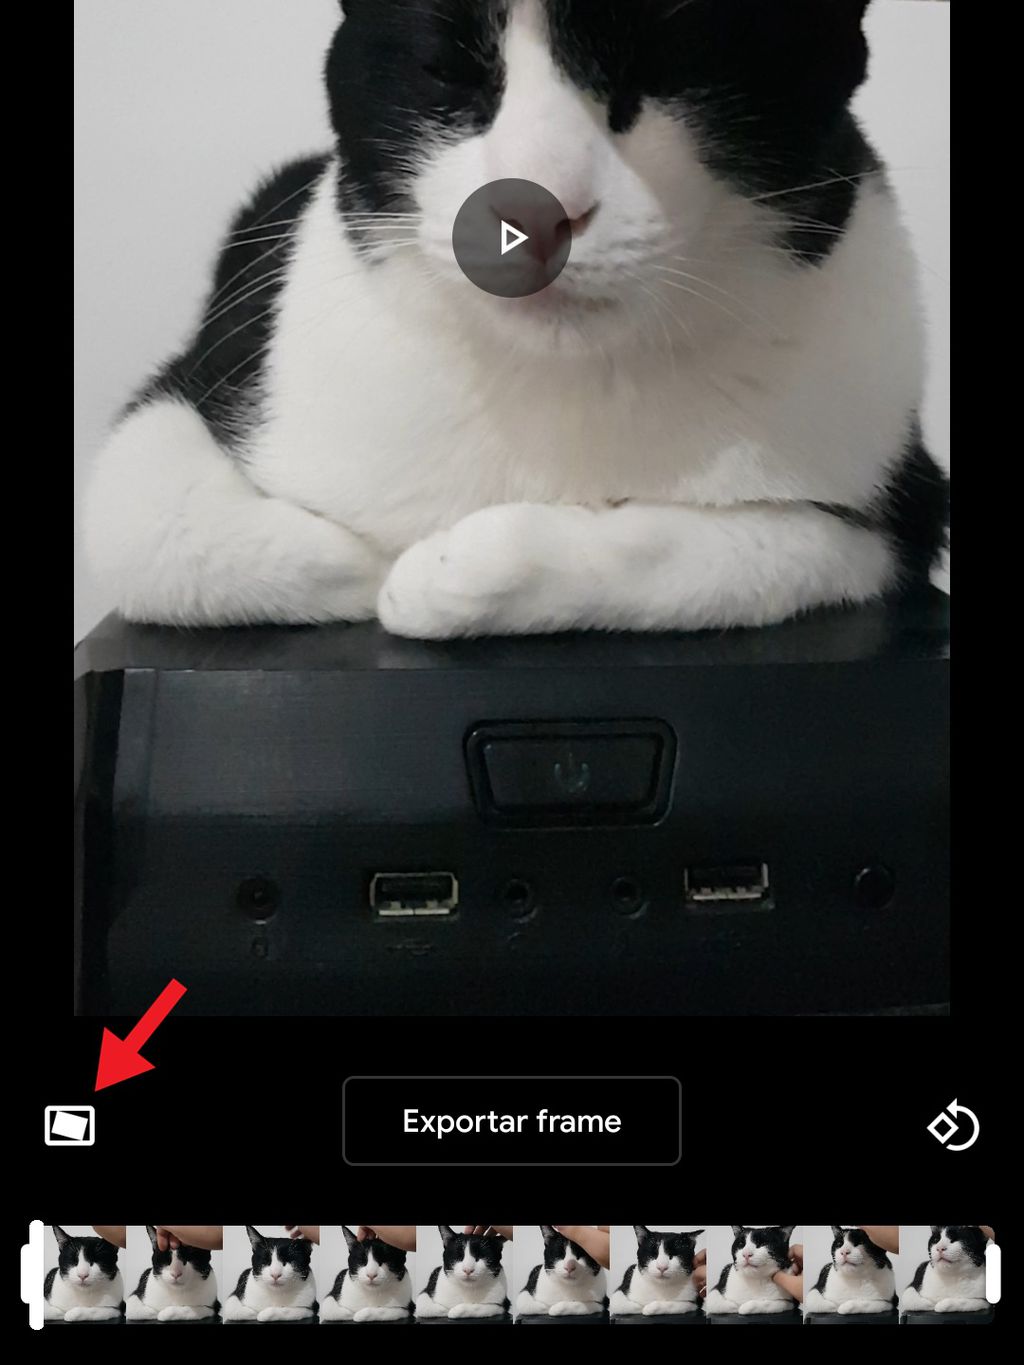 outras opções permitem exportar um frame e girar vídeos (Foto: Diego Sousa/Canaltech)